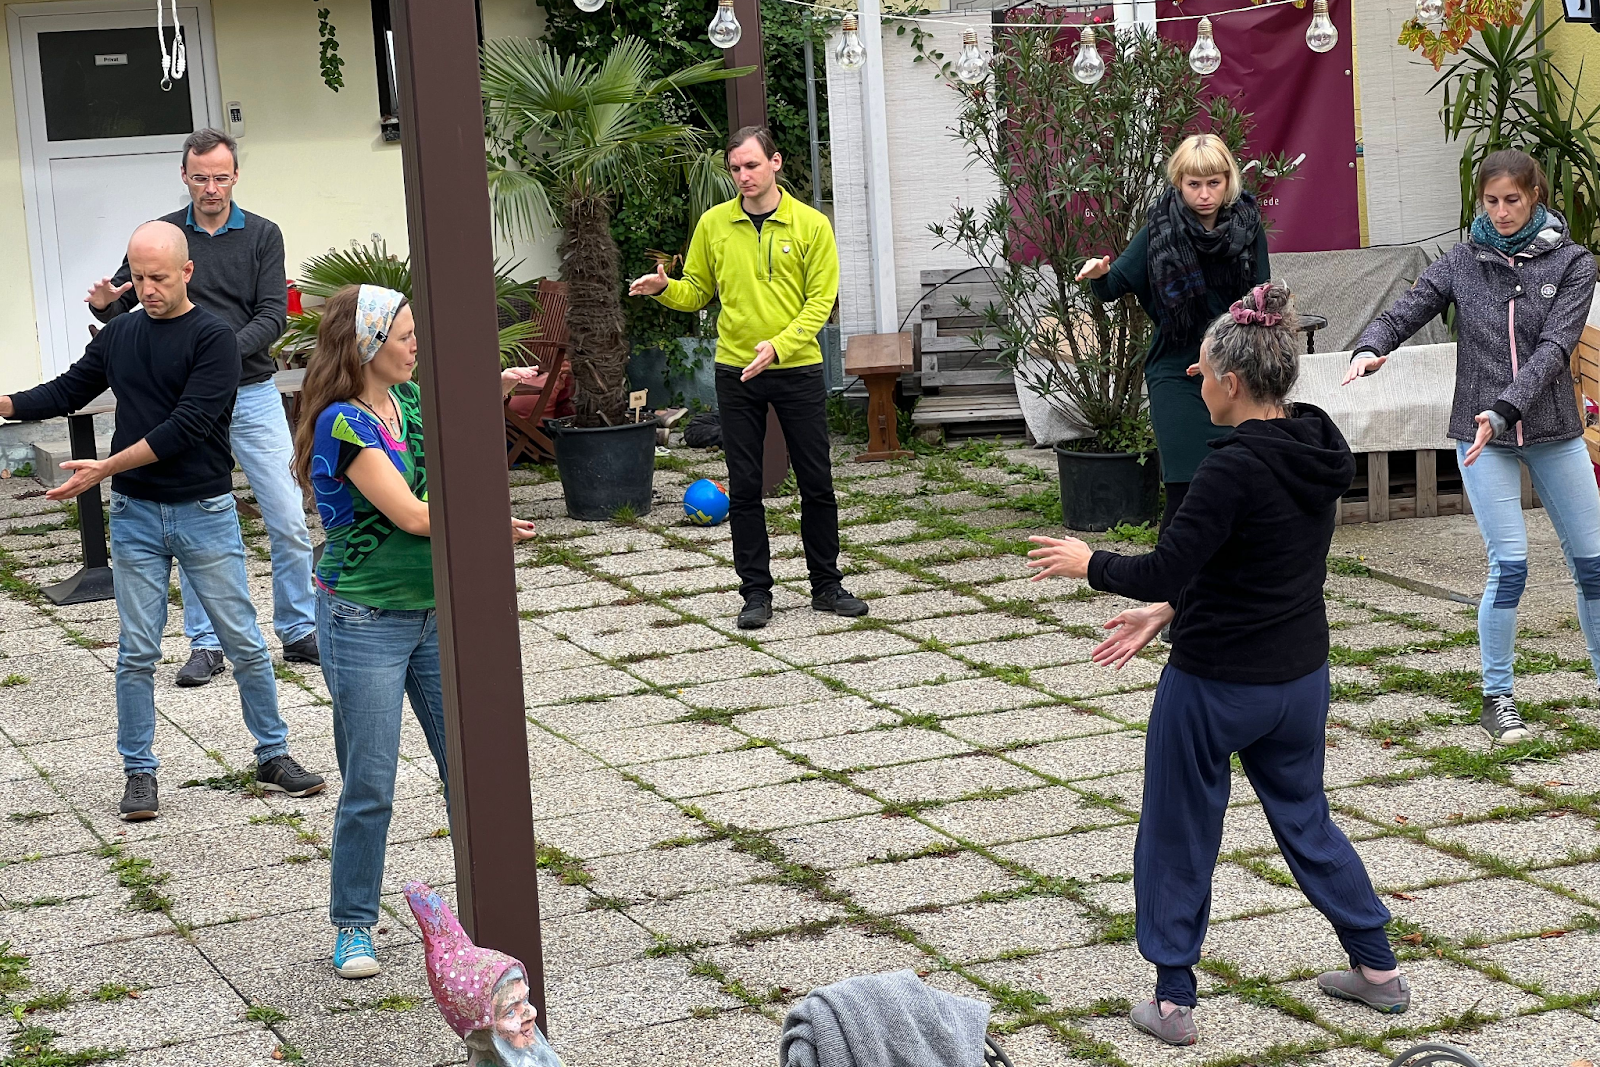 Menschen in einem Hinterhof die an einer Performance teilnehmen und eine Bewegungsübung gemeinsam ausüben bei der sie die Arme nach rechts bewegen müssen.